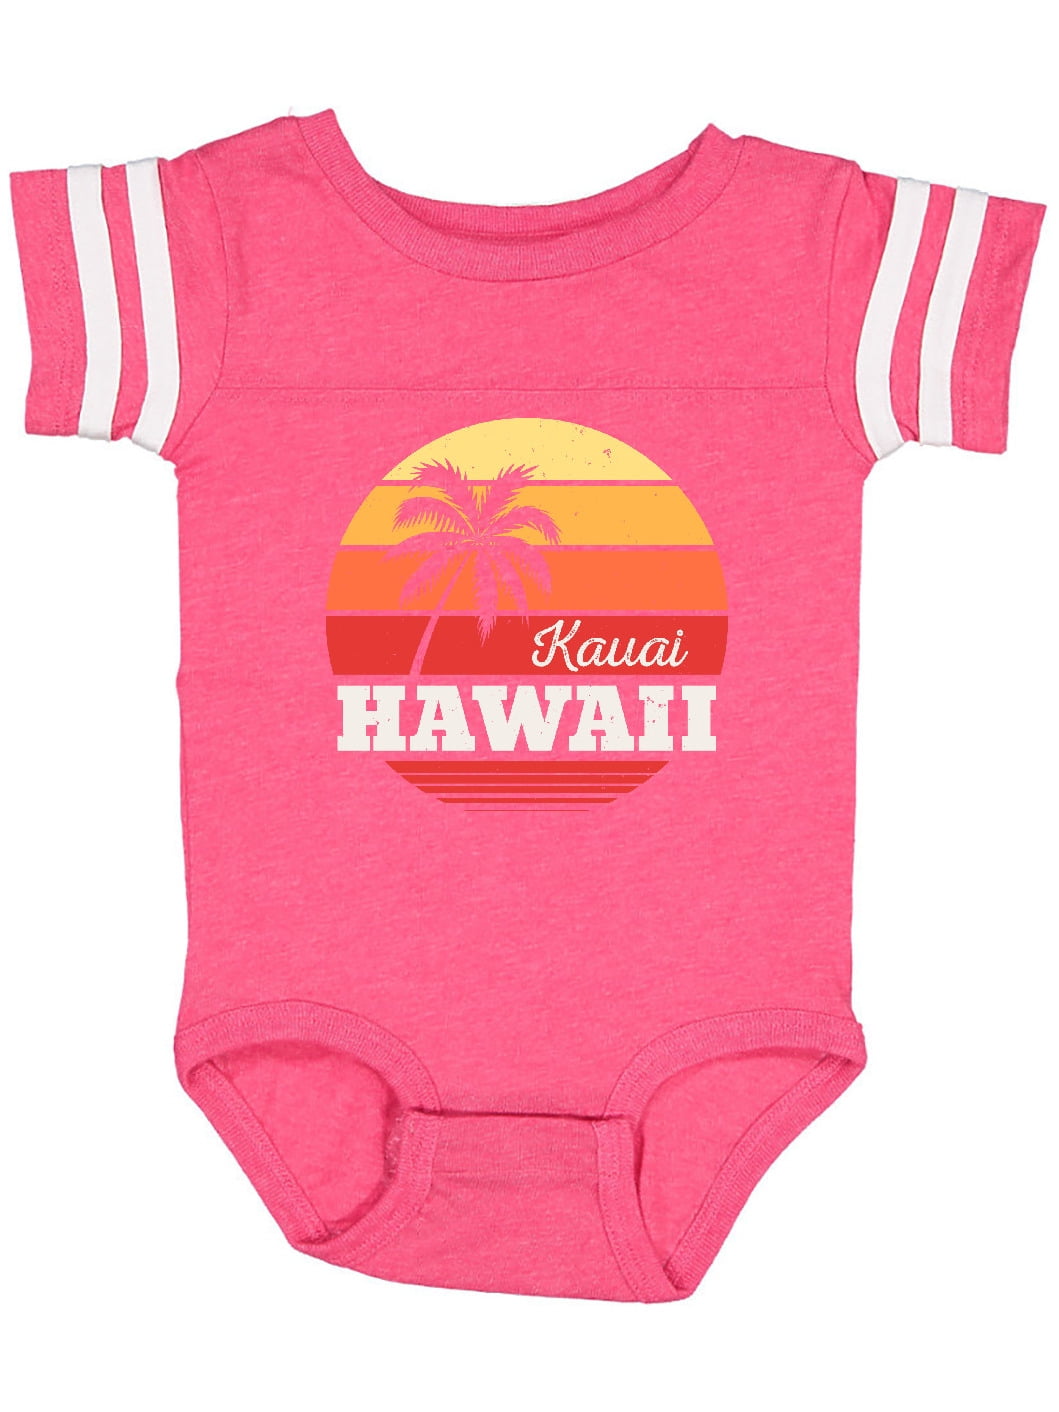 Sunset Hawaii Infant Romper Short-Sleeve Bodysuit Baby Boys Girls